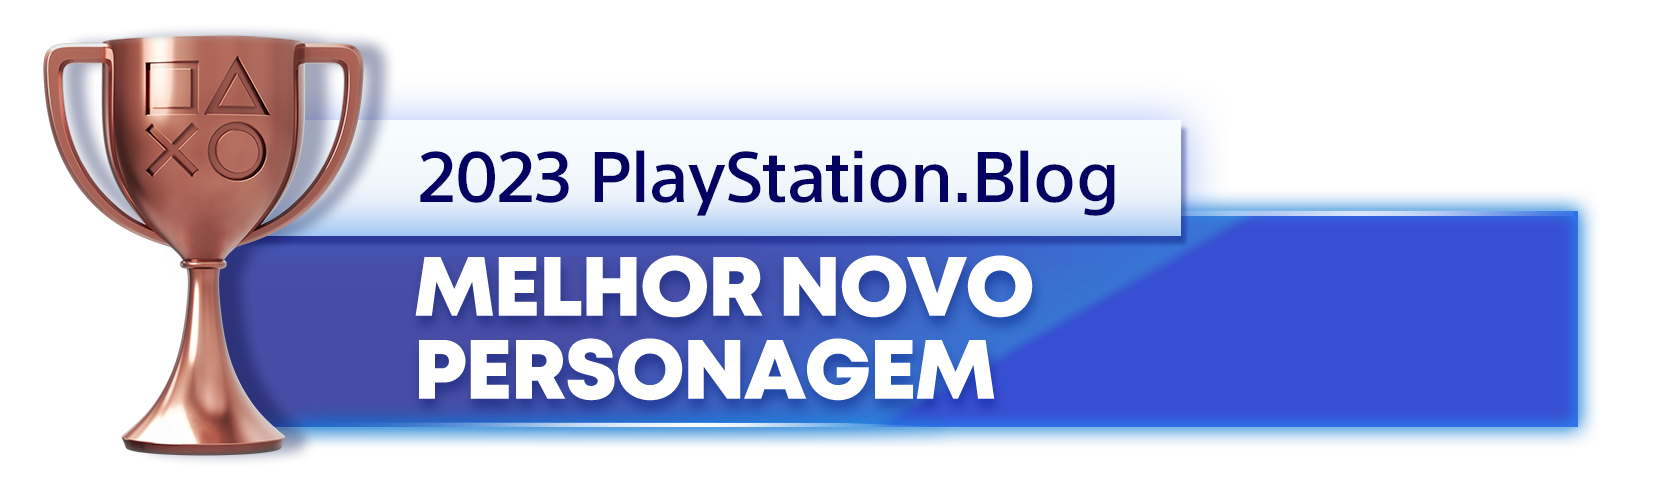  "Troféu de Bronze para o vencedor da categoria Melhor Personagem Novo de 2023 do Blog PlayStation"